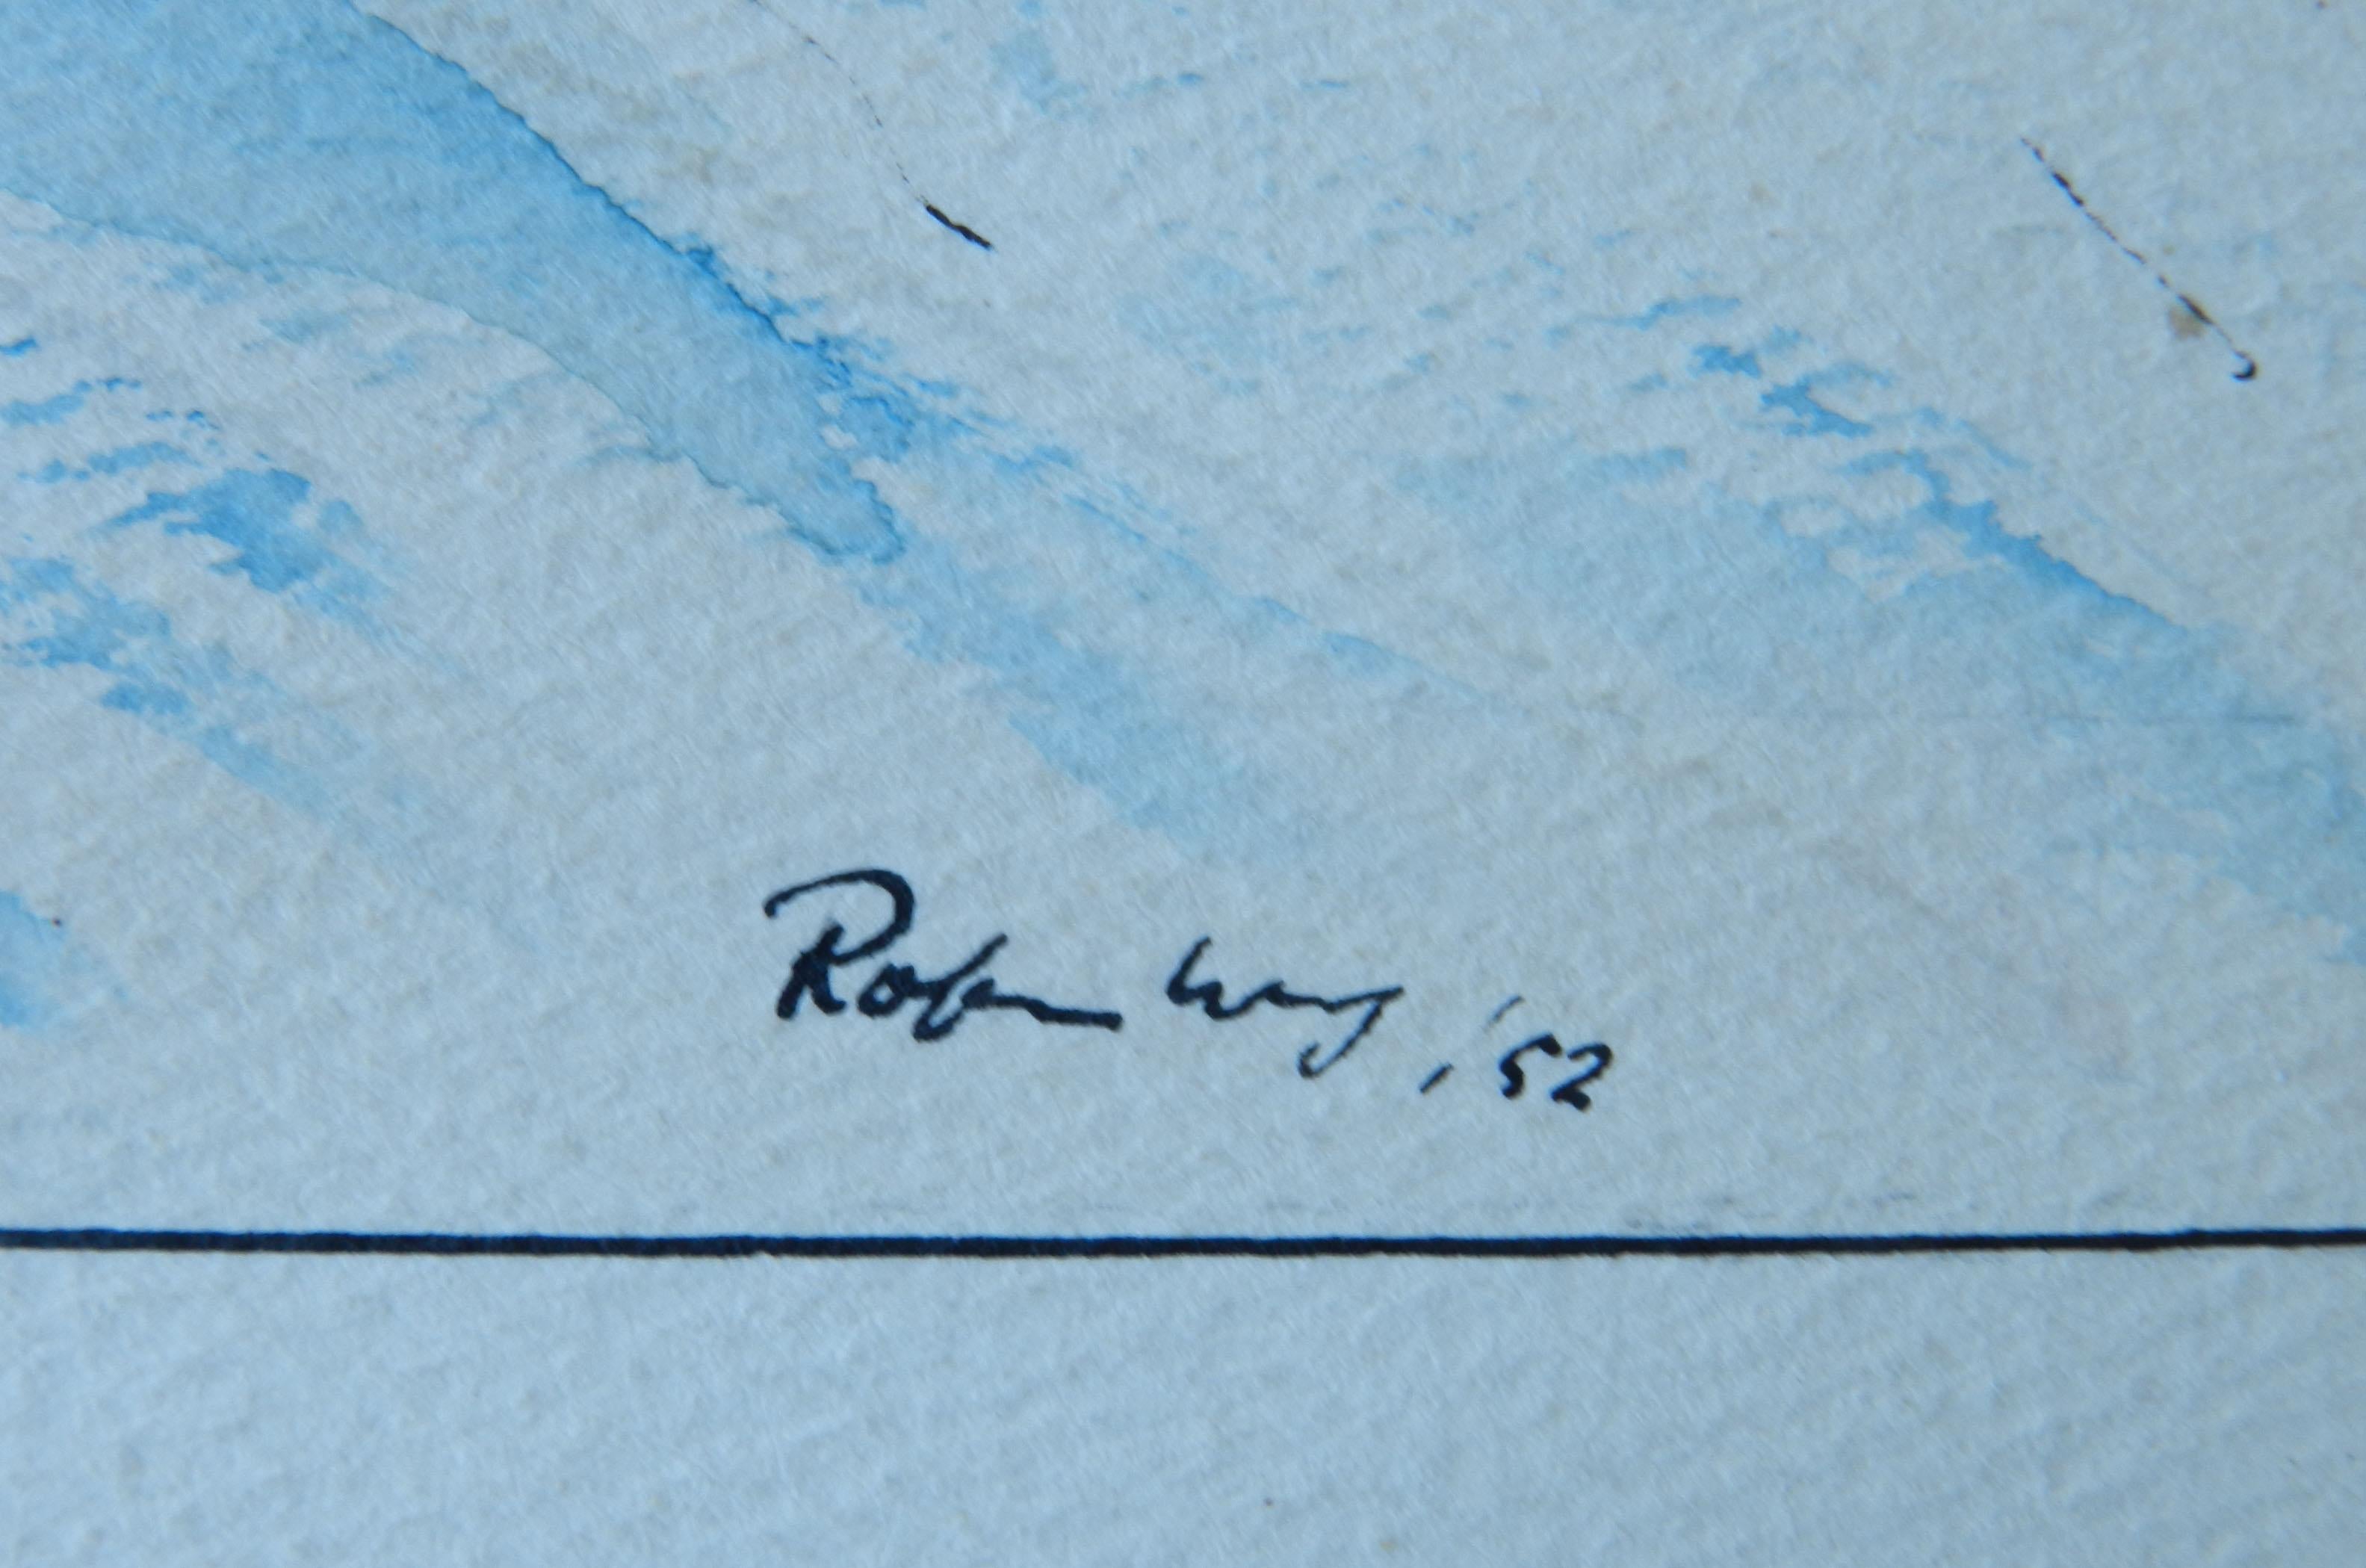 Skifahrer Original Künstler signiert Aquarell Mitte des Jahrhunderts c1952
Signiert vom Künstler Robin Way
Inklusive Rahmen (ohne Glas für den Versand)
Guter Vintage-Zustand

